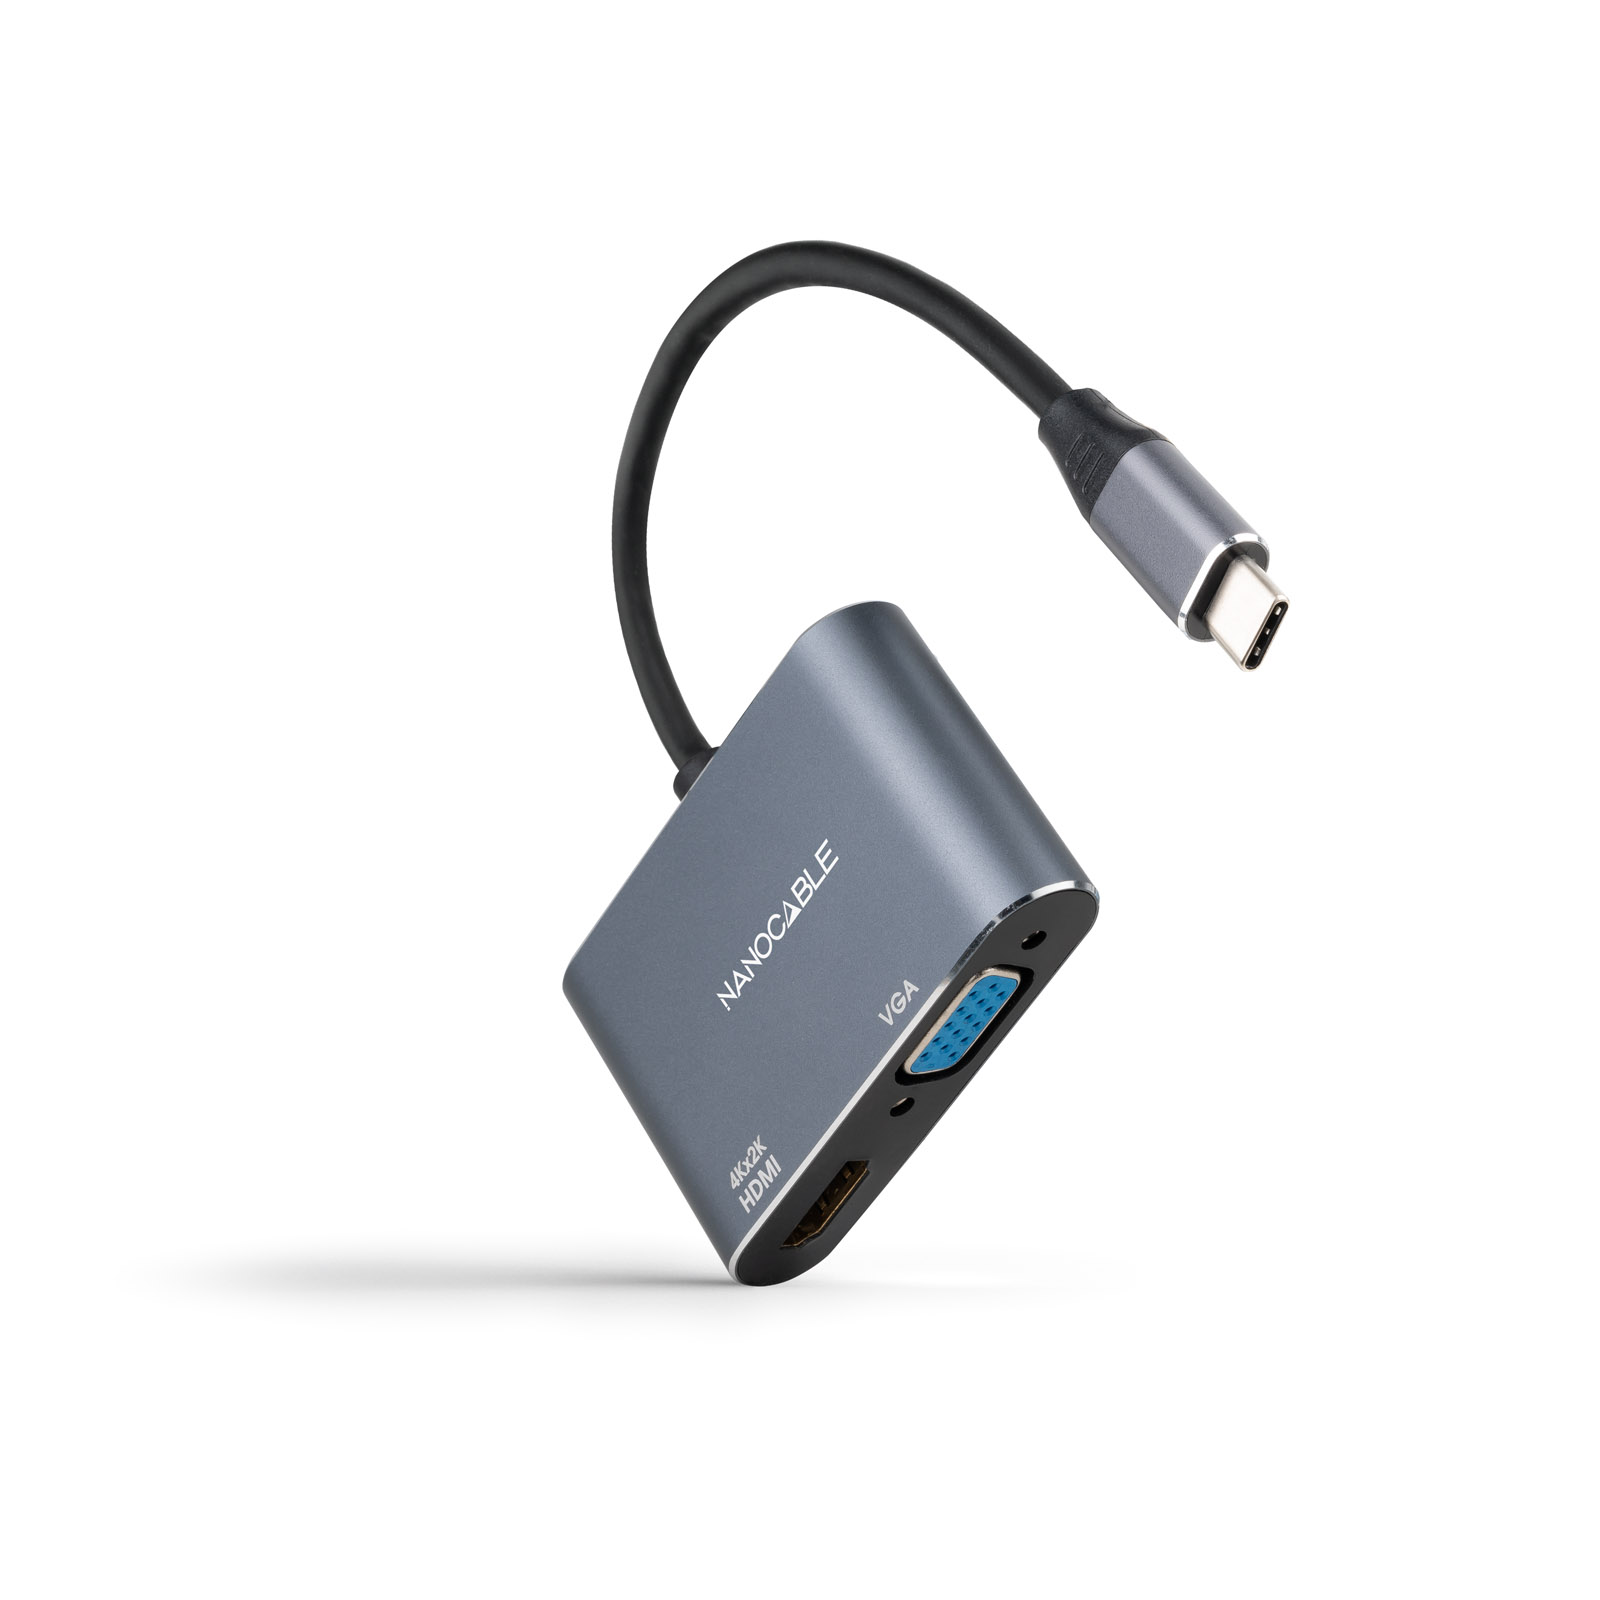 Convertisseur Nanocable USB-C vers HDMI 4K et VGA - Couleur grise